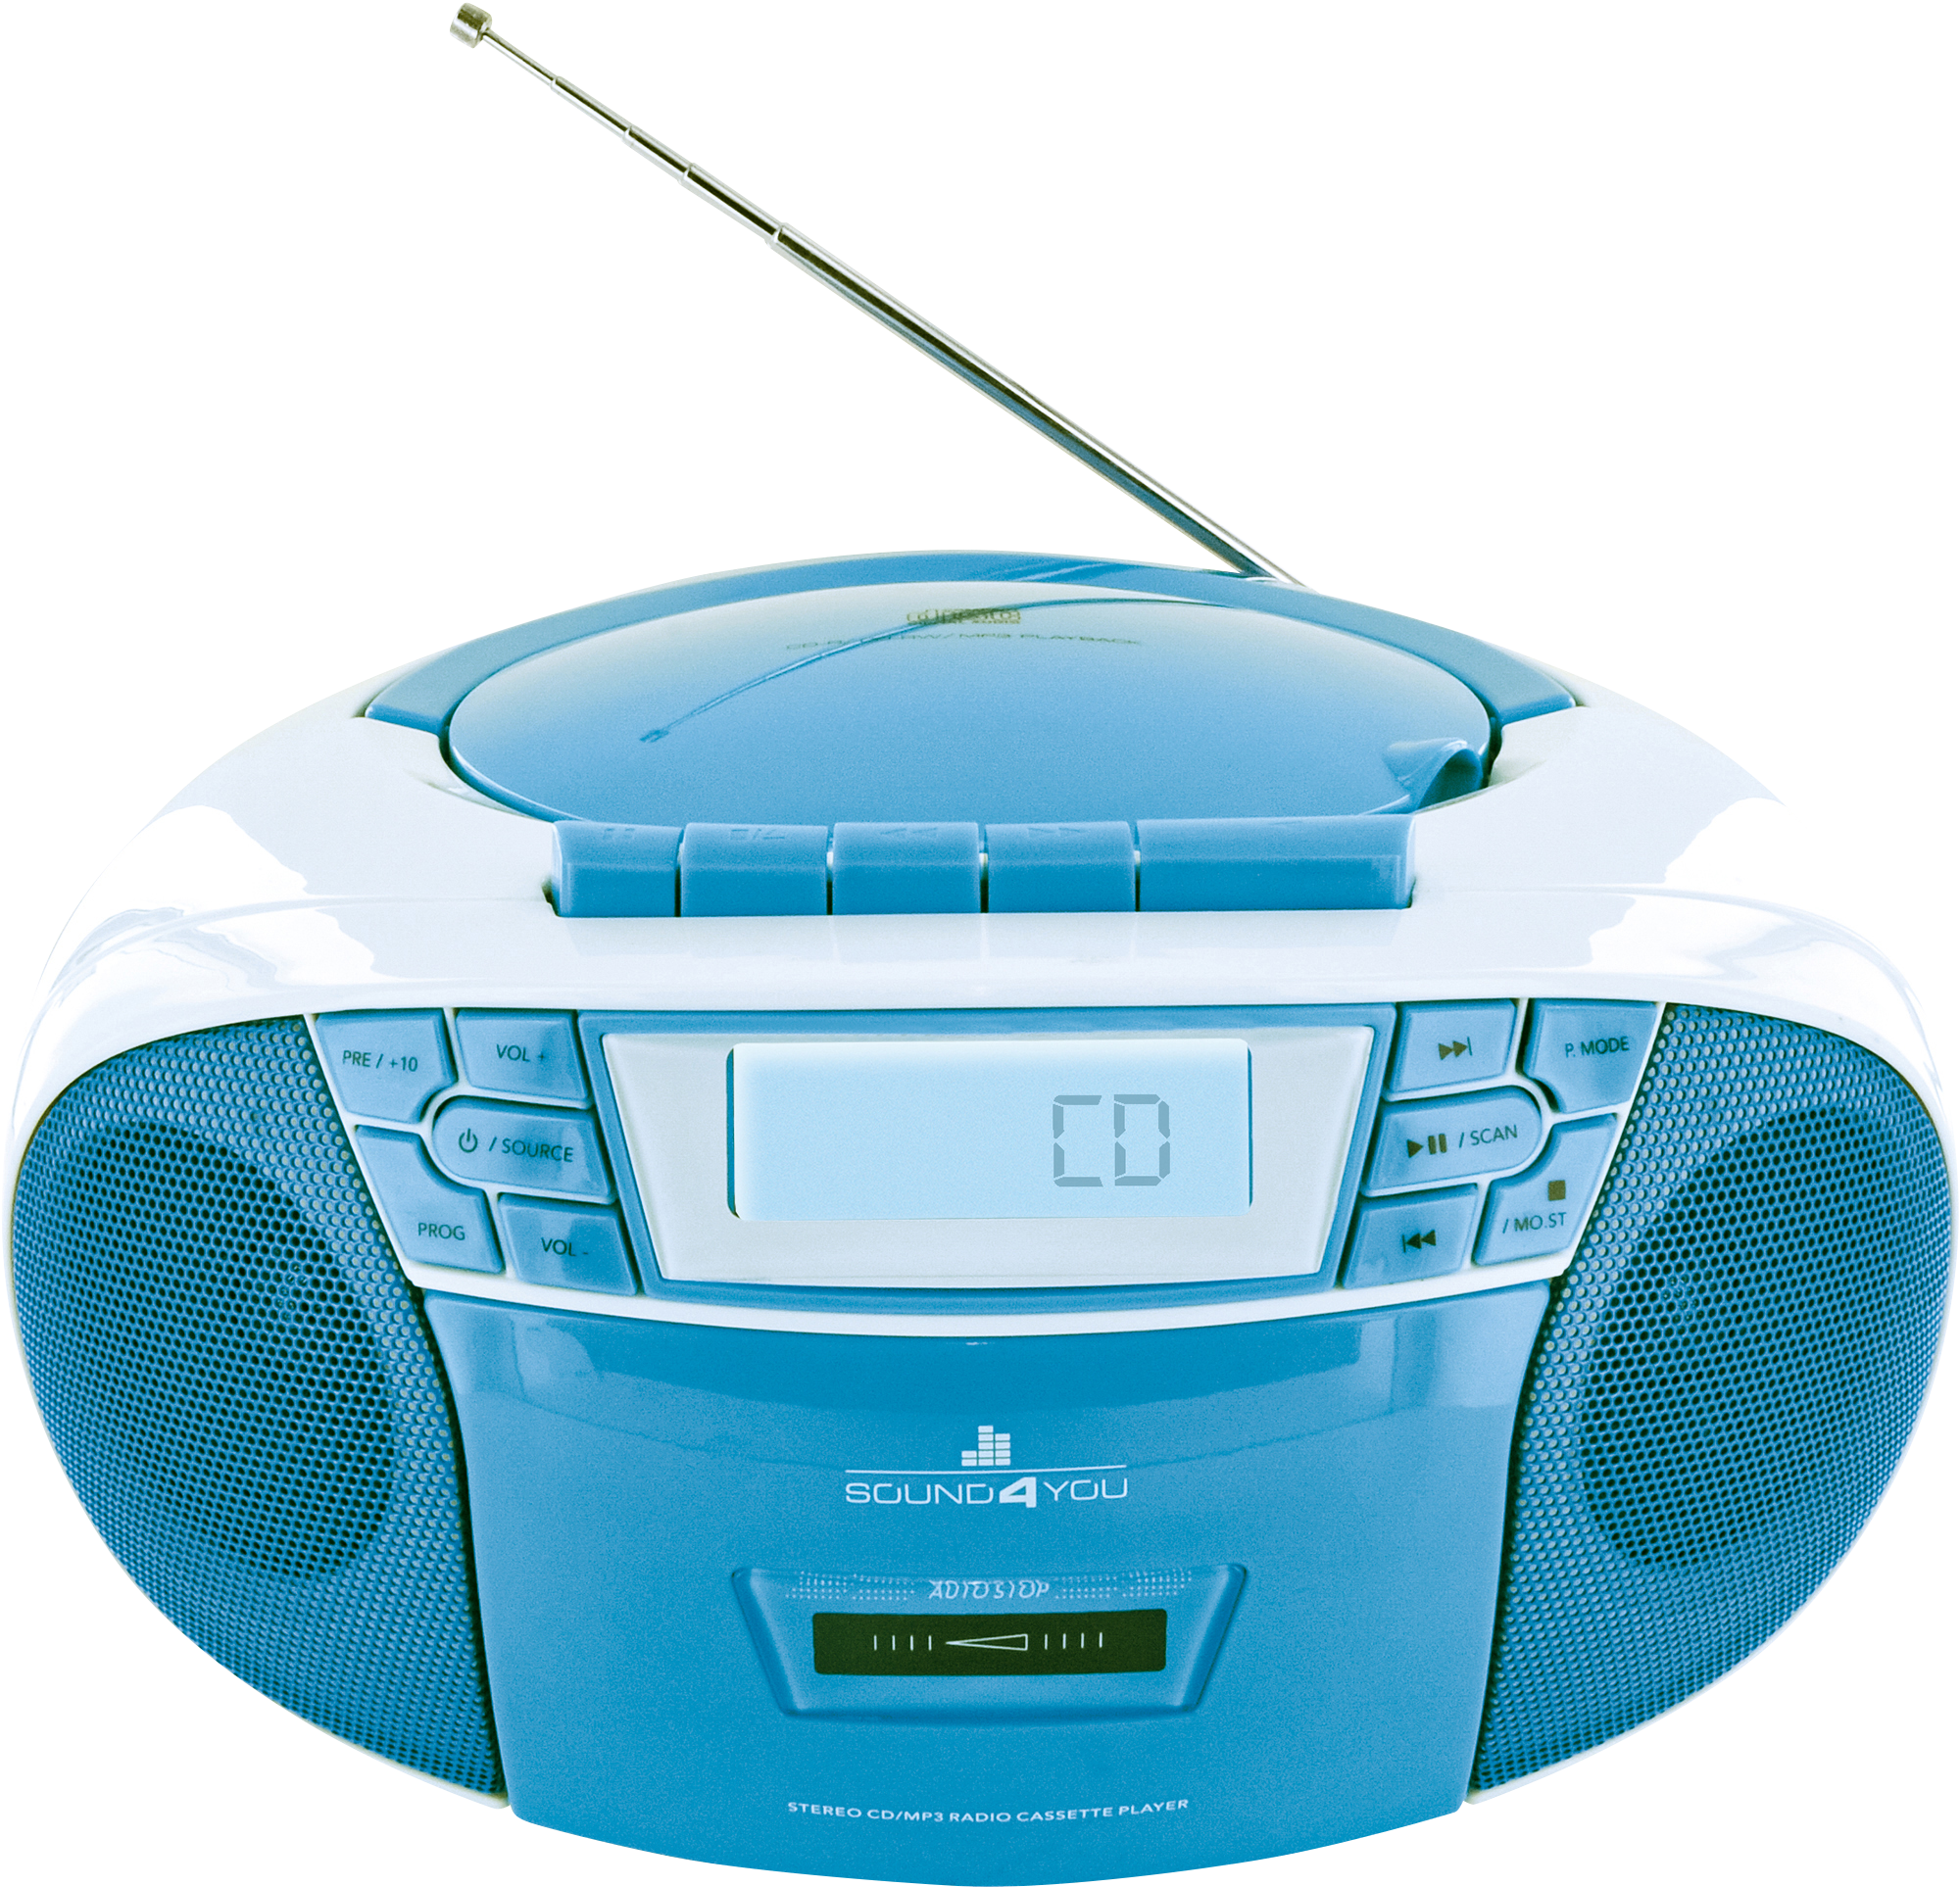 SCHWAIGER mit und Tragbarer CD-Player FM Radio, Kassettendeck Blau/Weiß -661651-